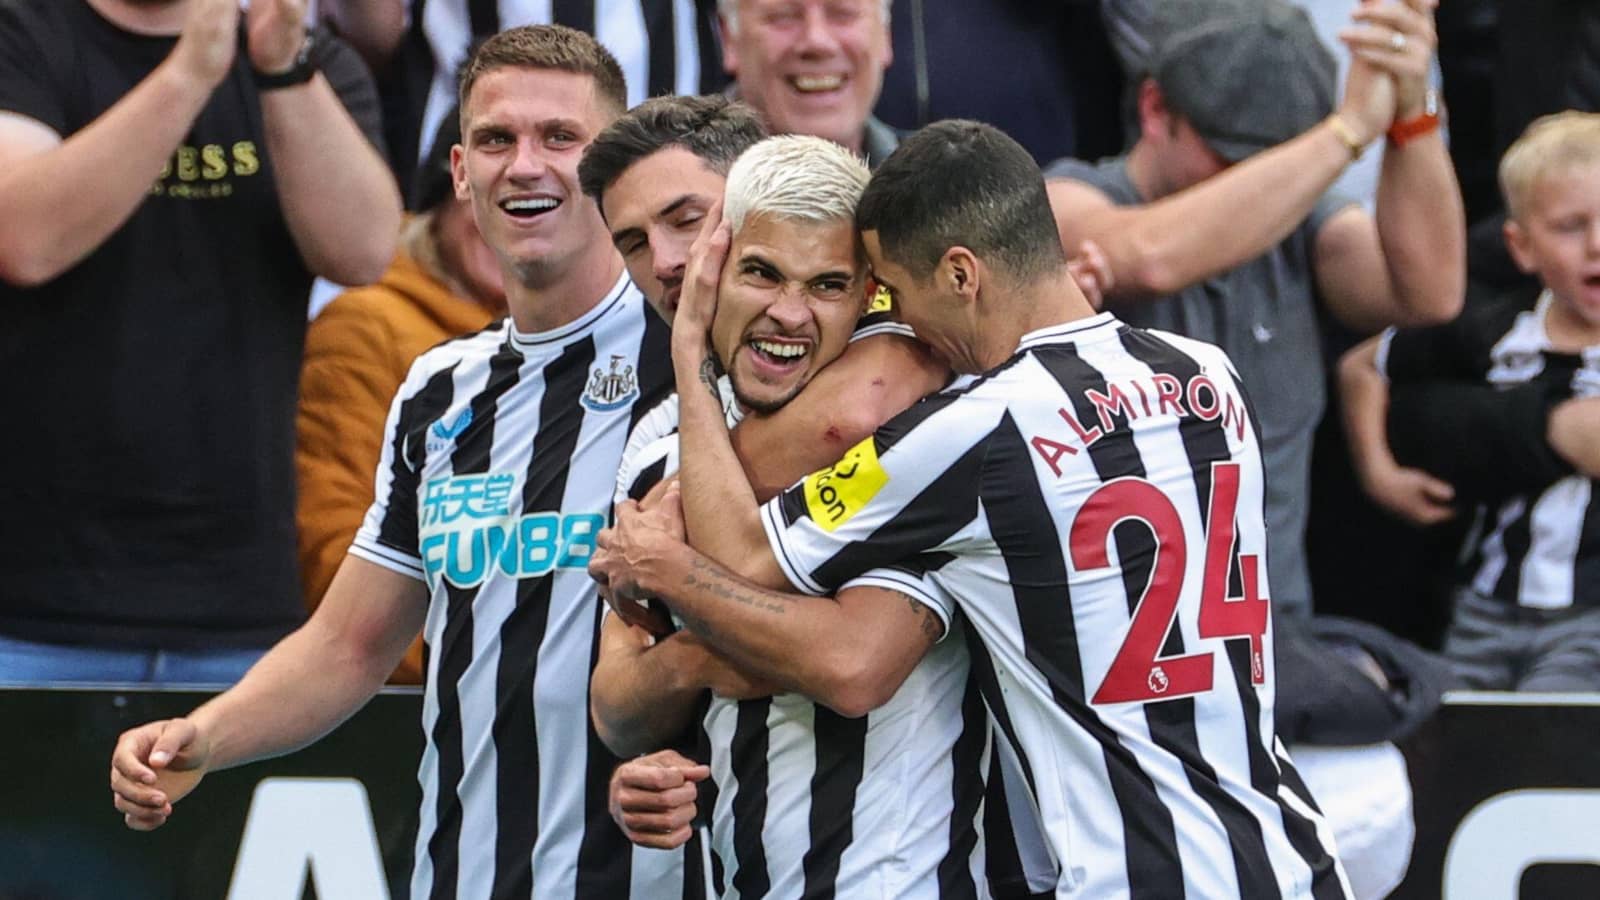 Newcastle tiếp tục bay cao trên bảng xếp hạng NHA sau chiến thắng trước Aston Villa ở vòng 14 (Ảnh: Internet)